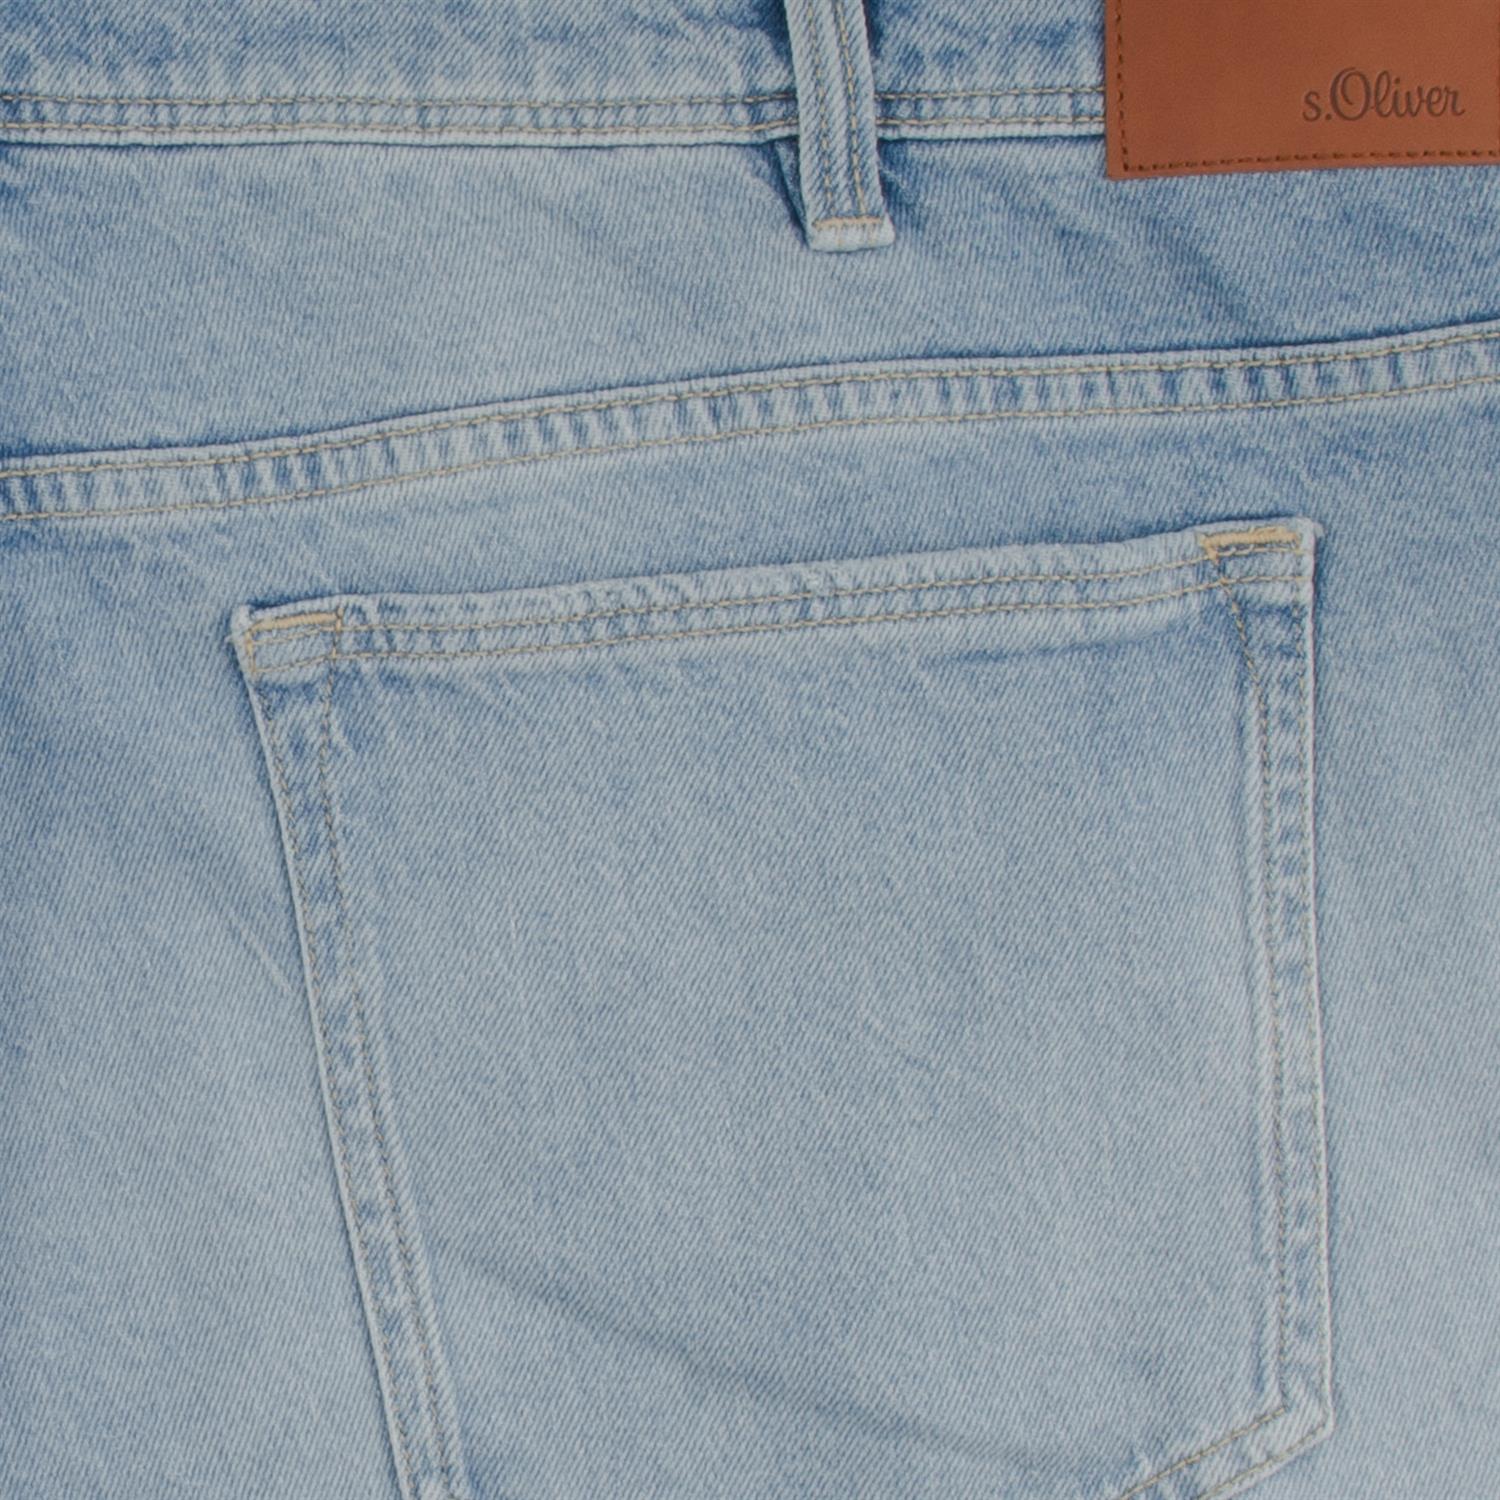 S.OLIVER Jeans hellblau Herrenmode in Übergrößen kaufen